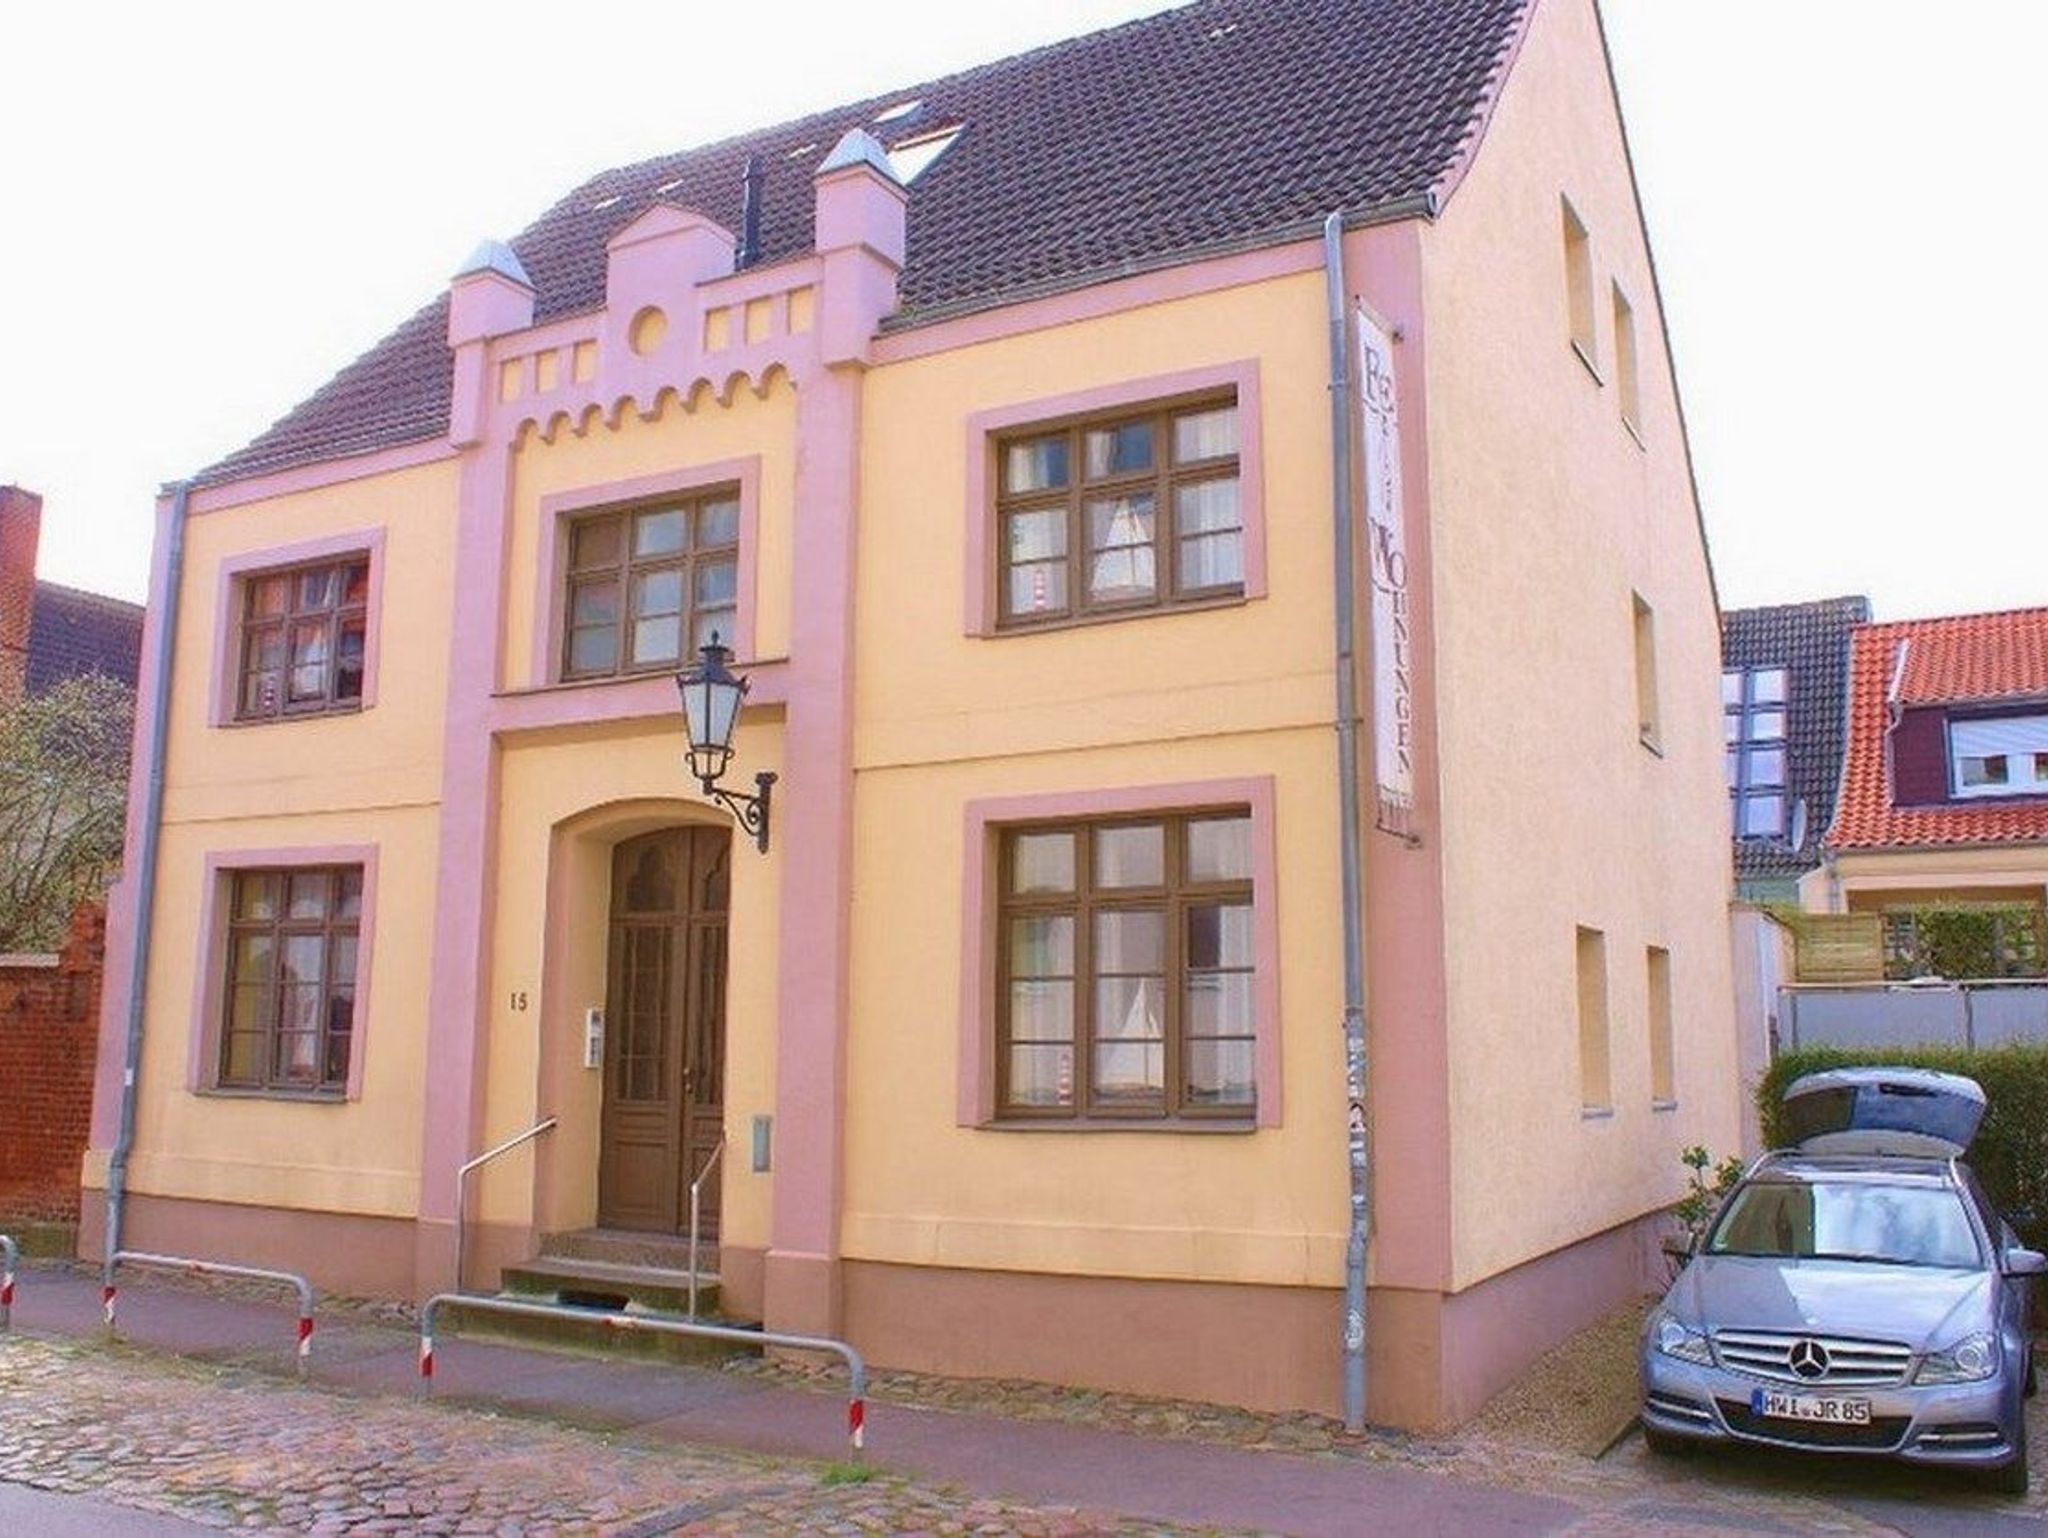 Ostseebad Rerik Heimatmuseum und Veranstaltungsort